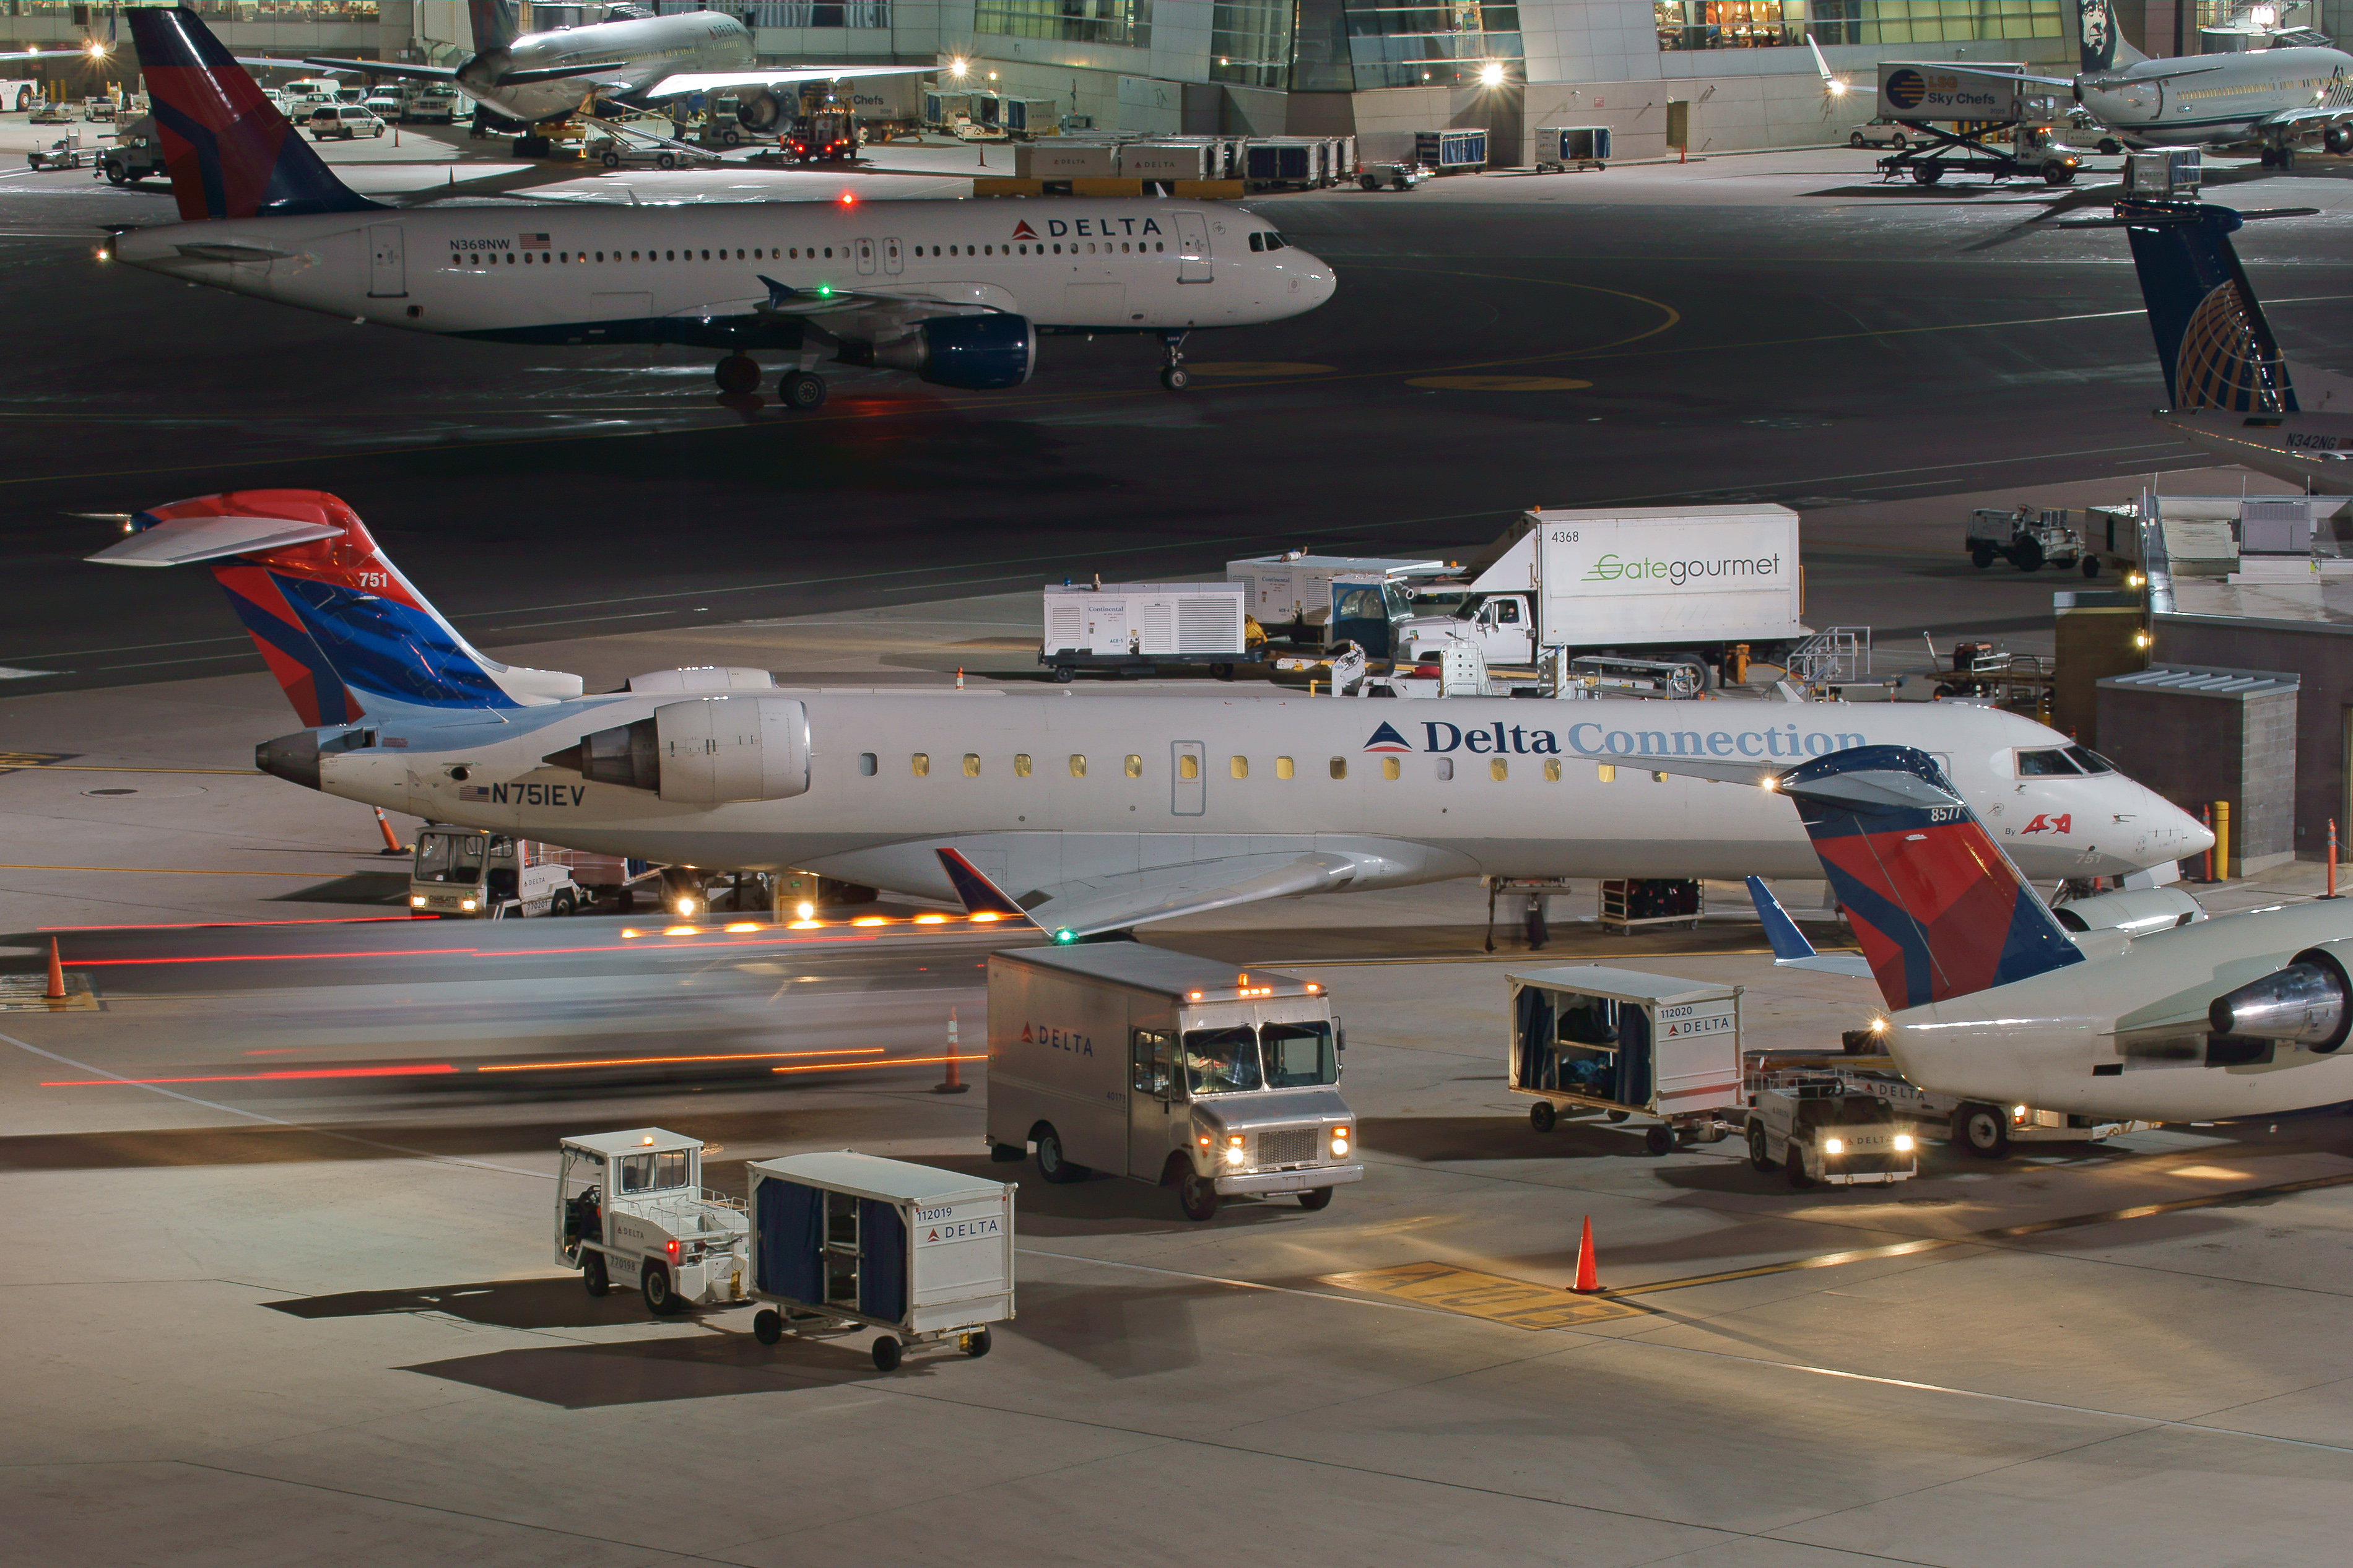 Delta Connection CRJ-700